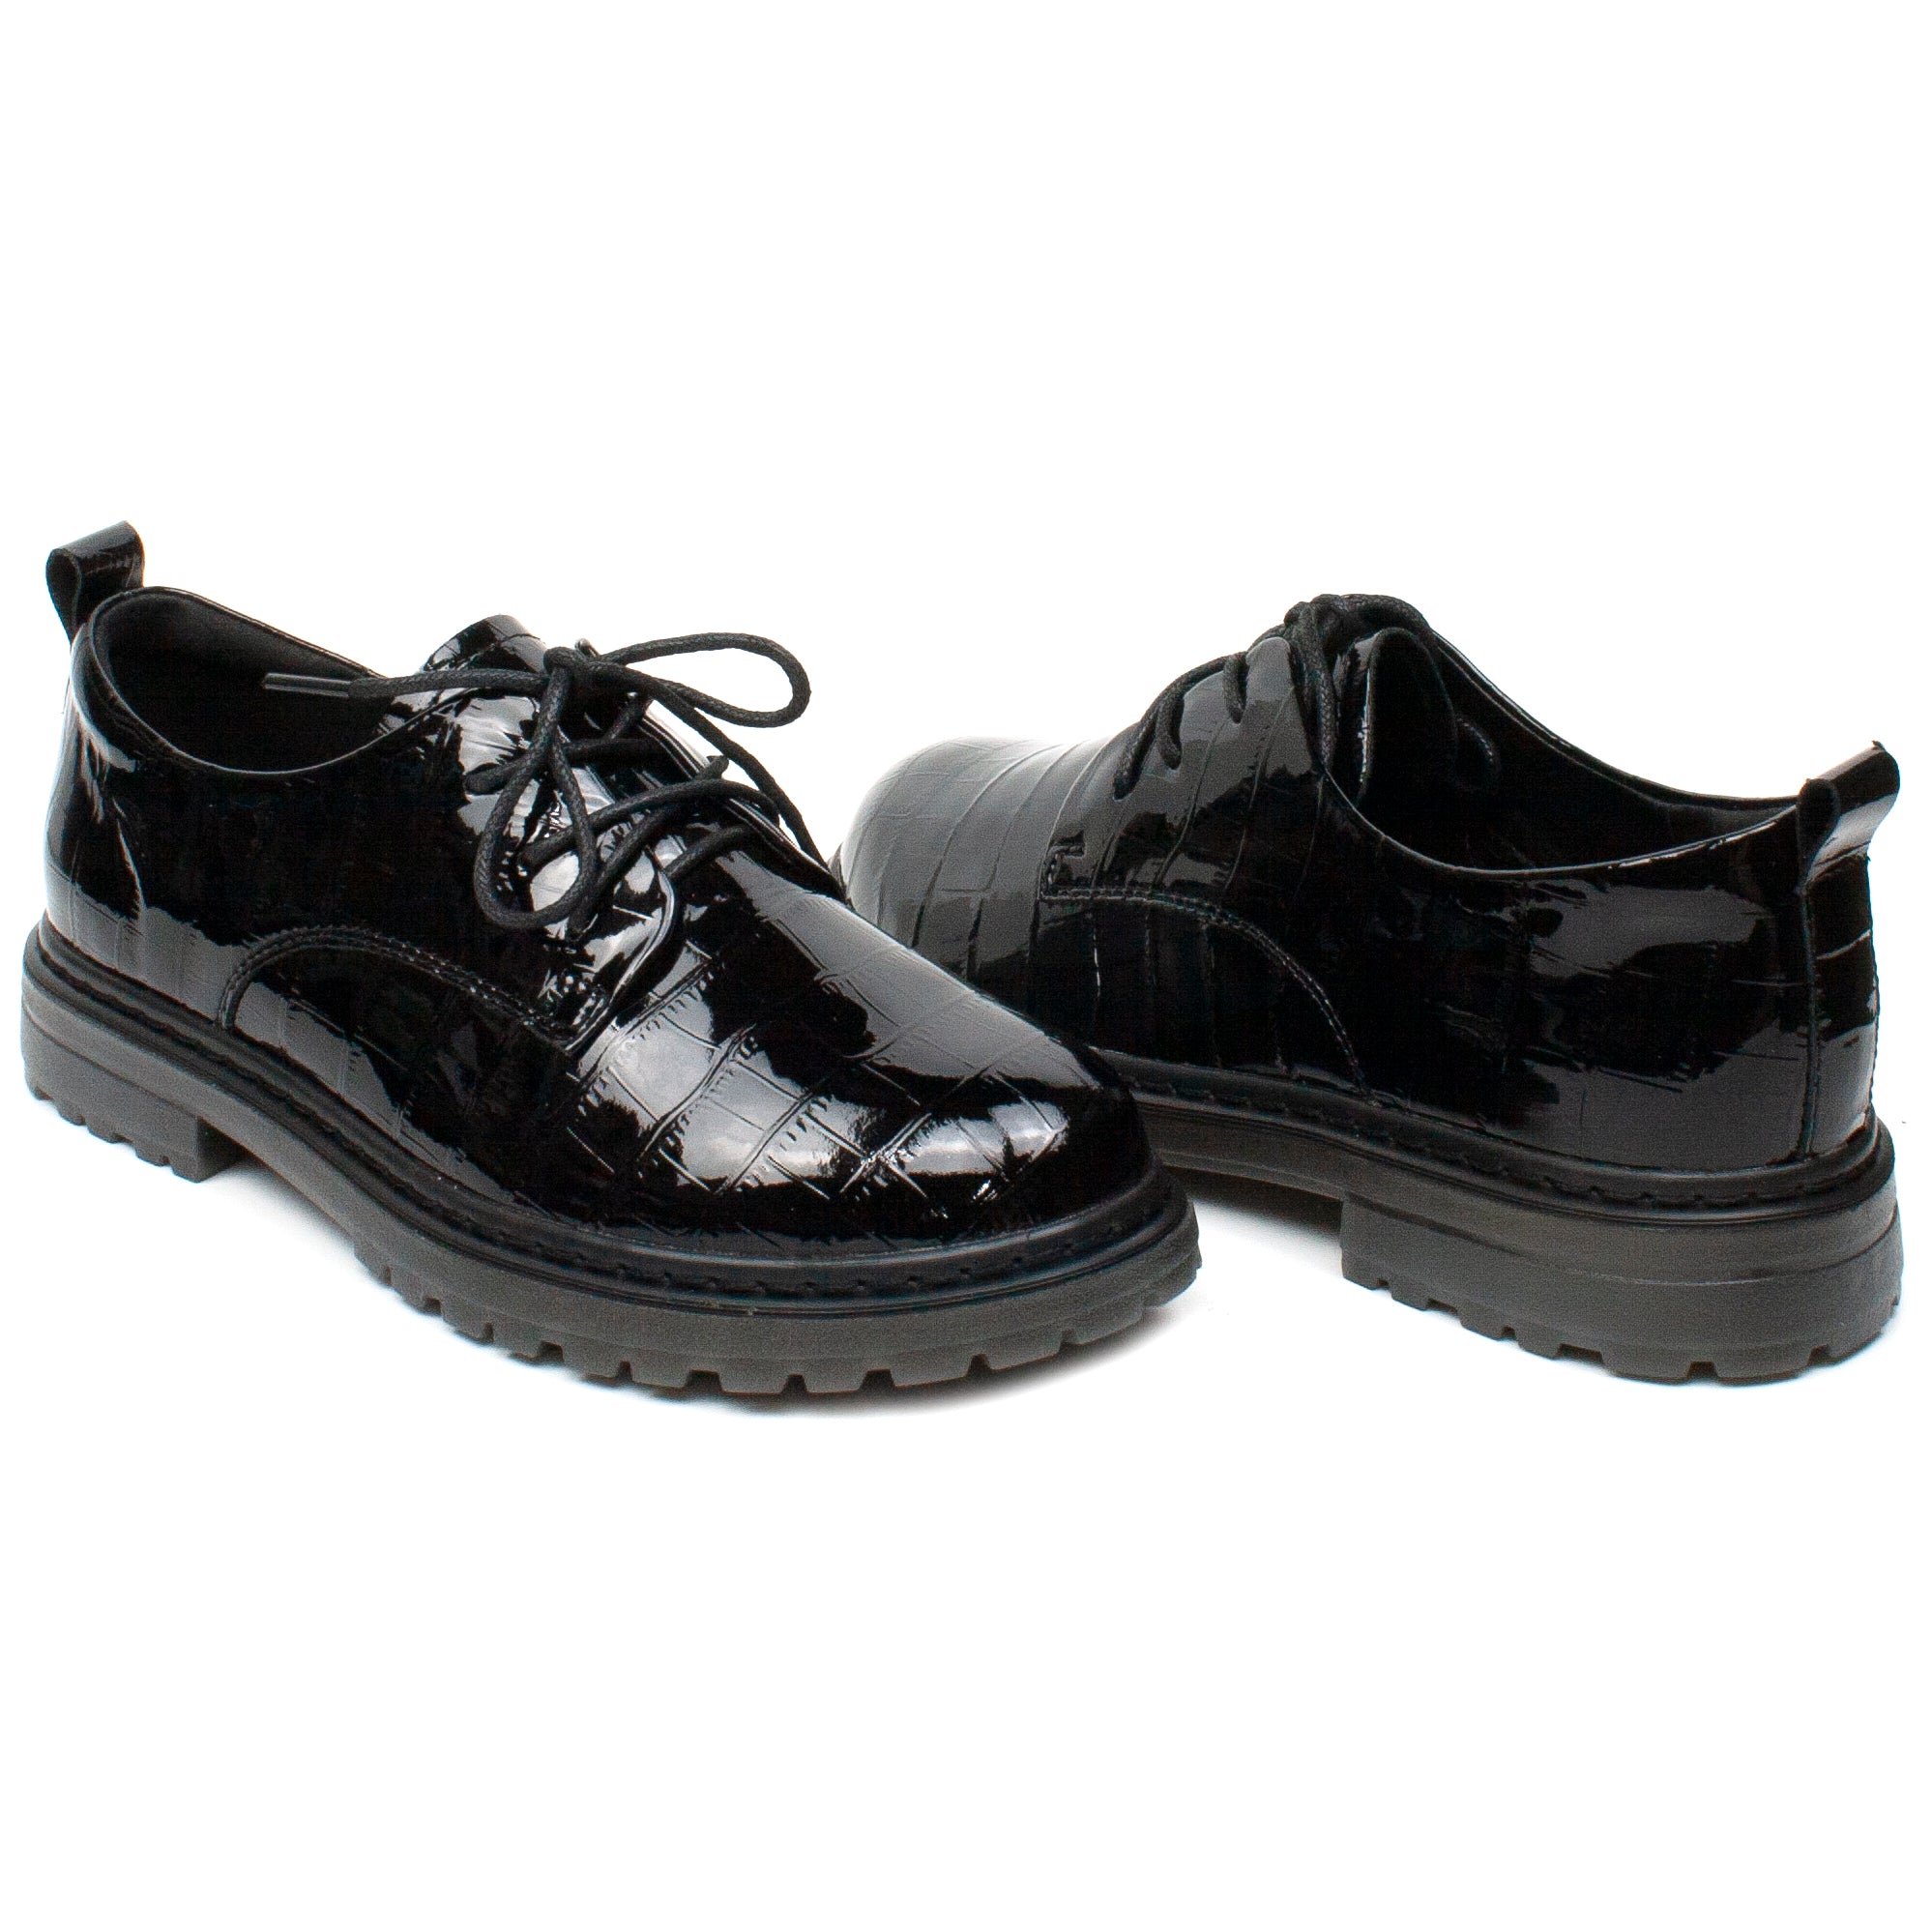 Formazione Pantofi dama 74206 1 negru lac ID2768-NGL